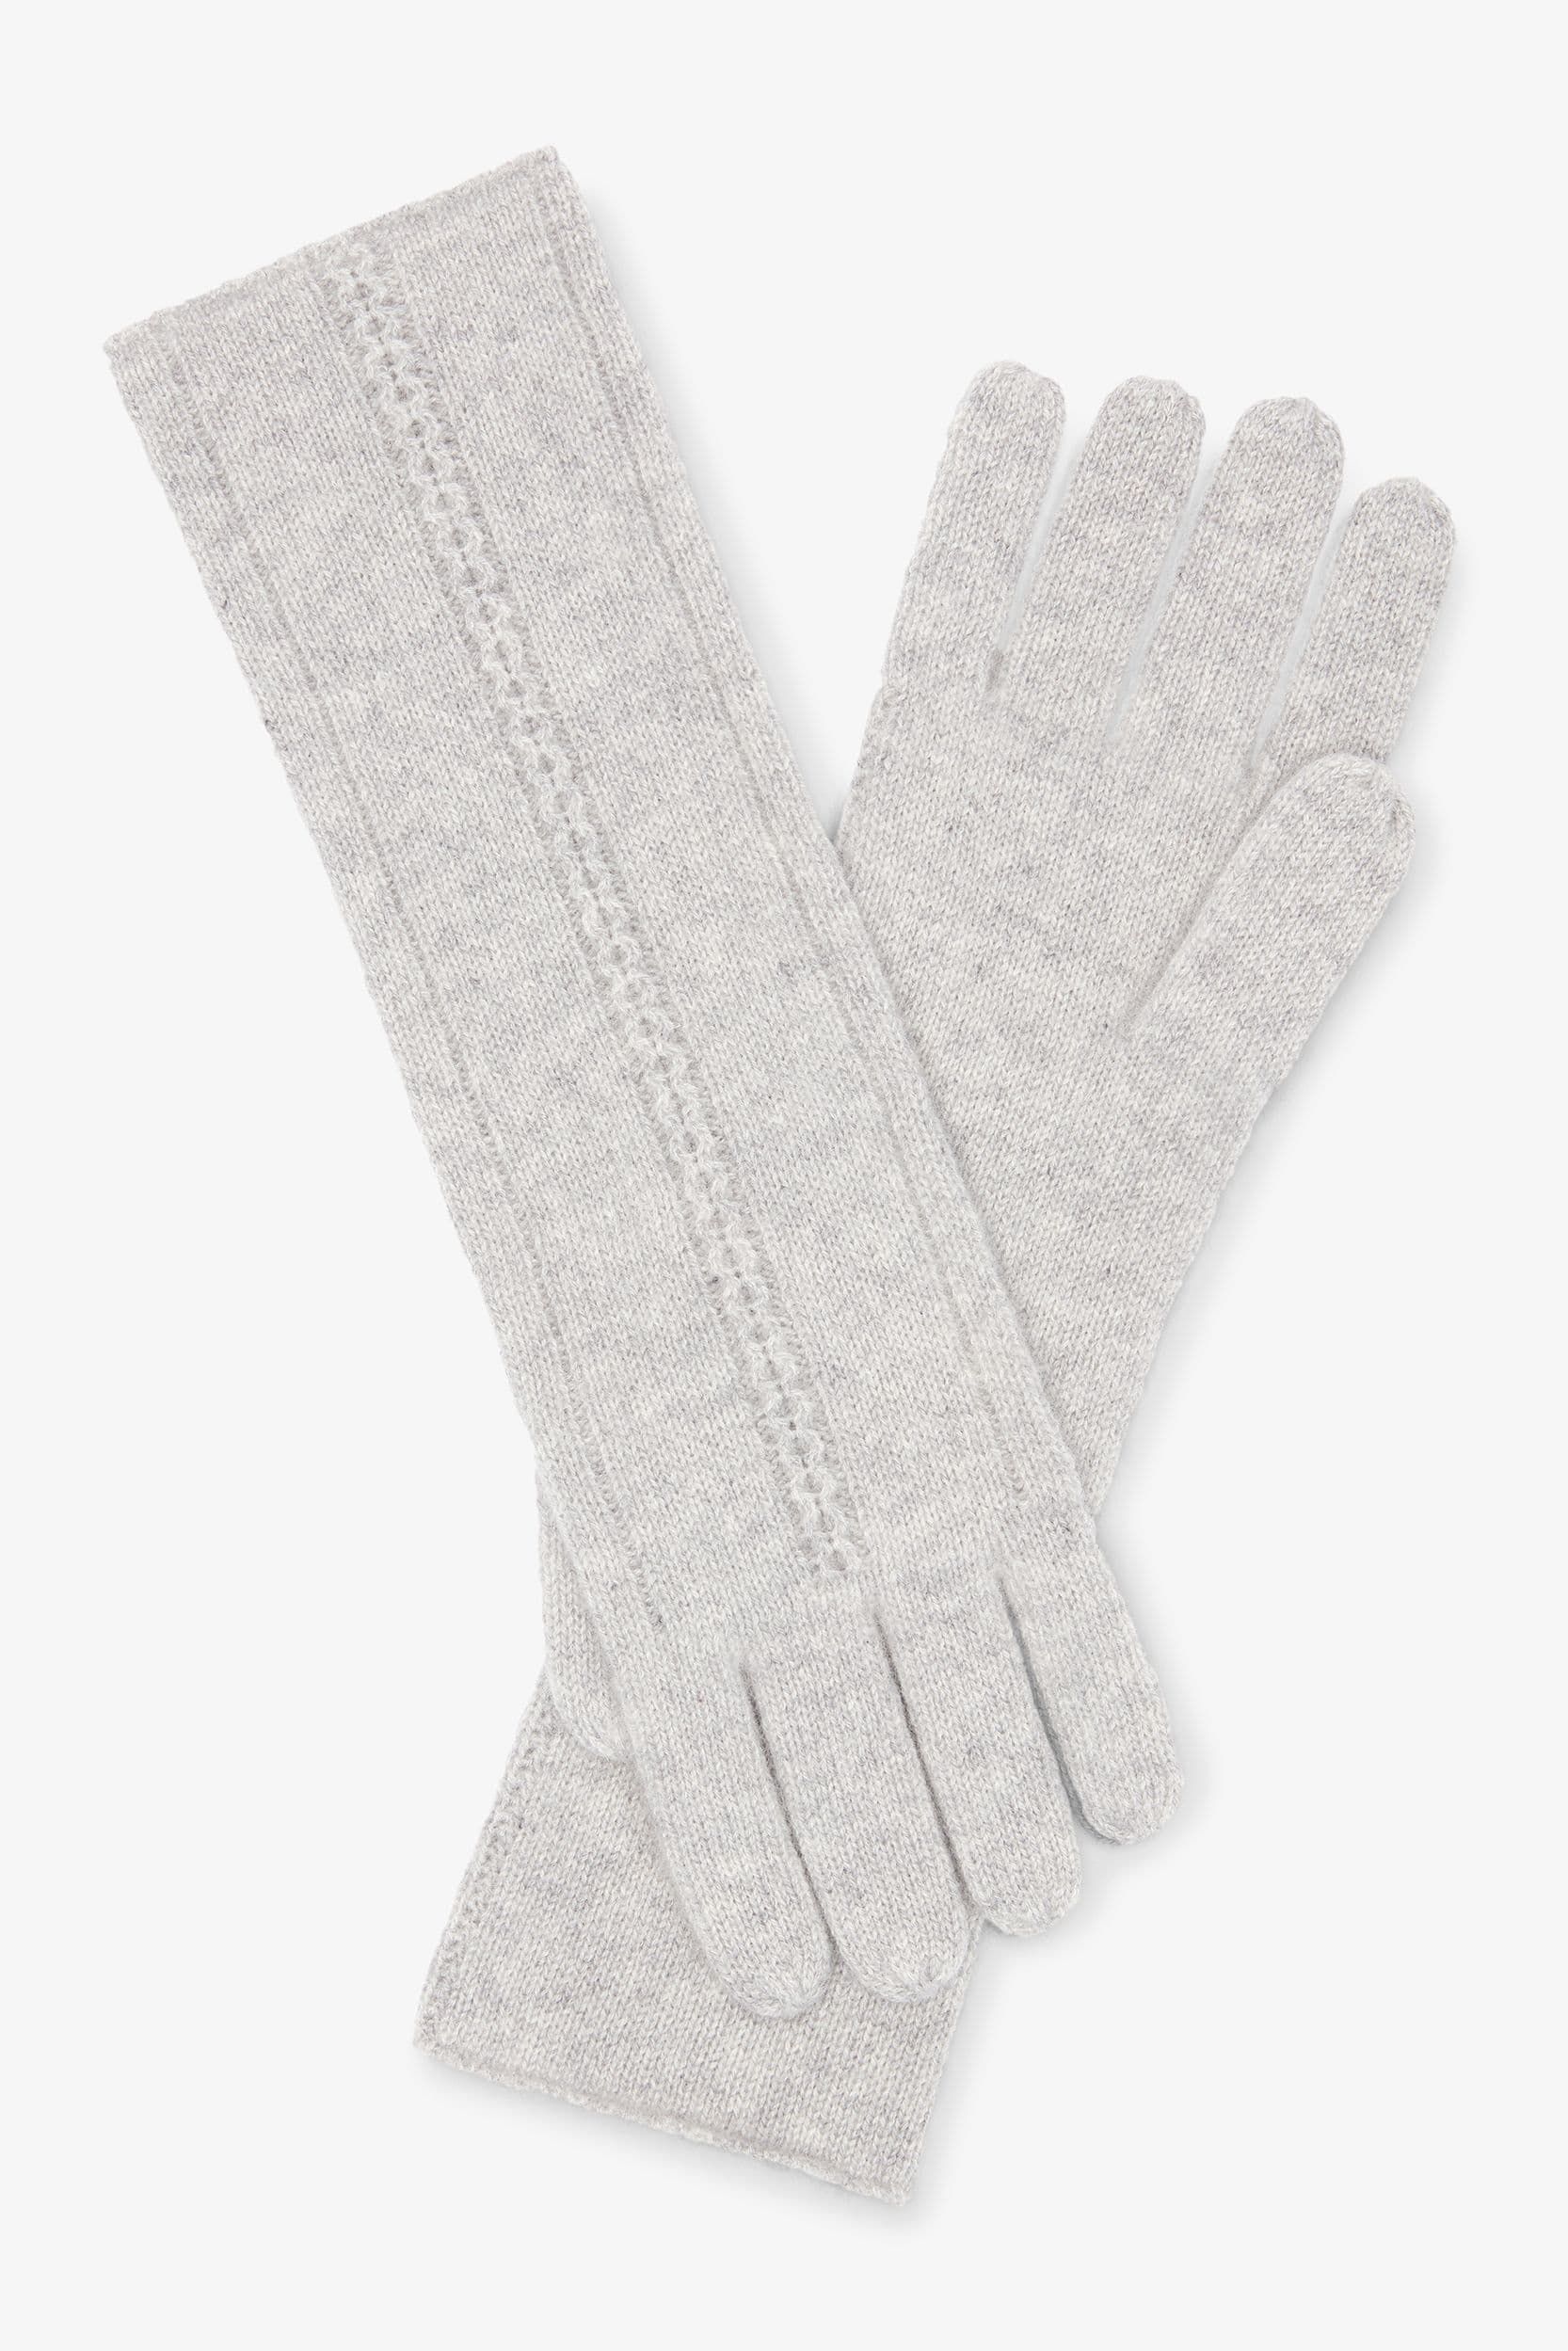 The Circle Cable Gloves—Cashmere | MM LaFleur